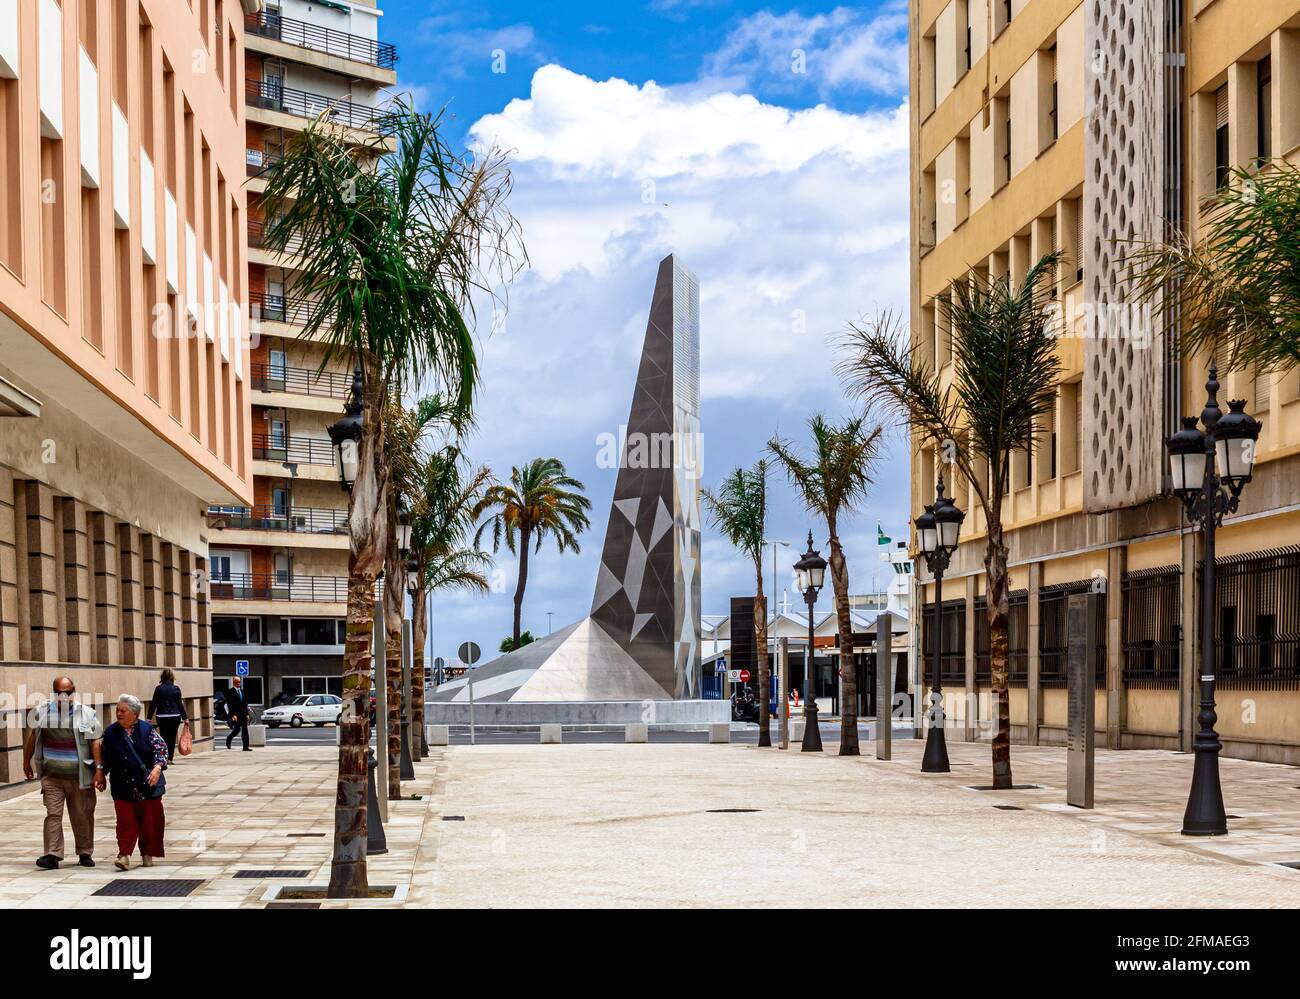 Cáciz, Andalusien, Spanien - 17. Mai 2013: Plaza de la Hispanidad mit Denkmal am Kreisverkehr. Stockfoto